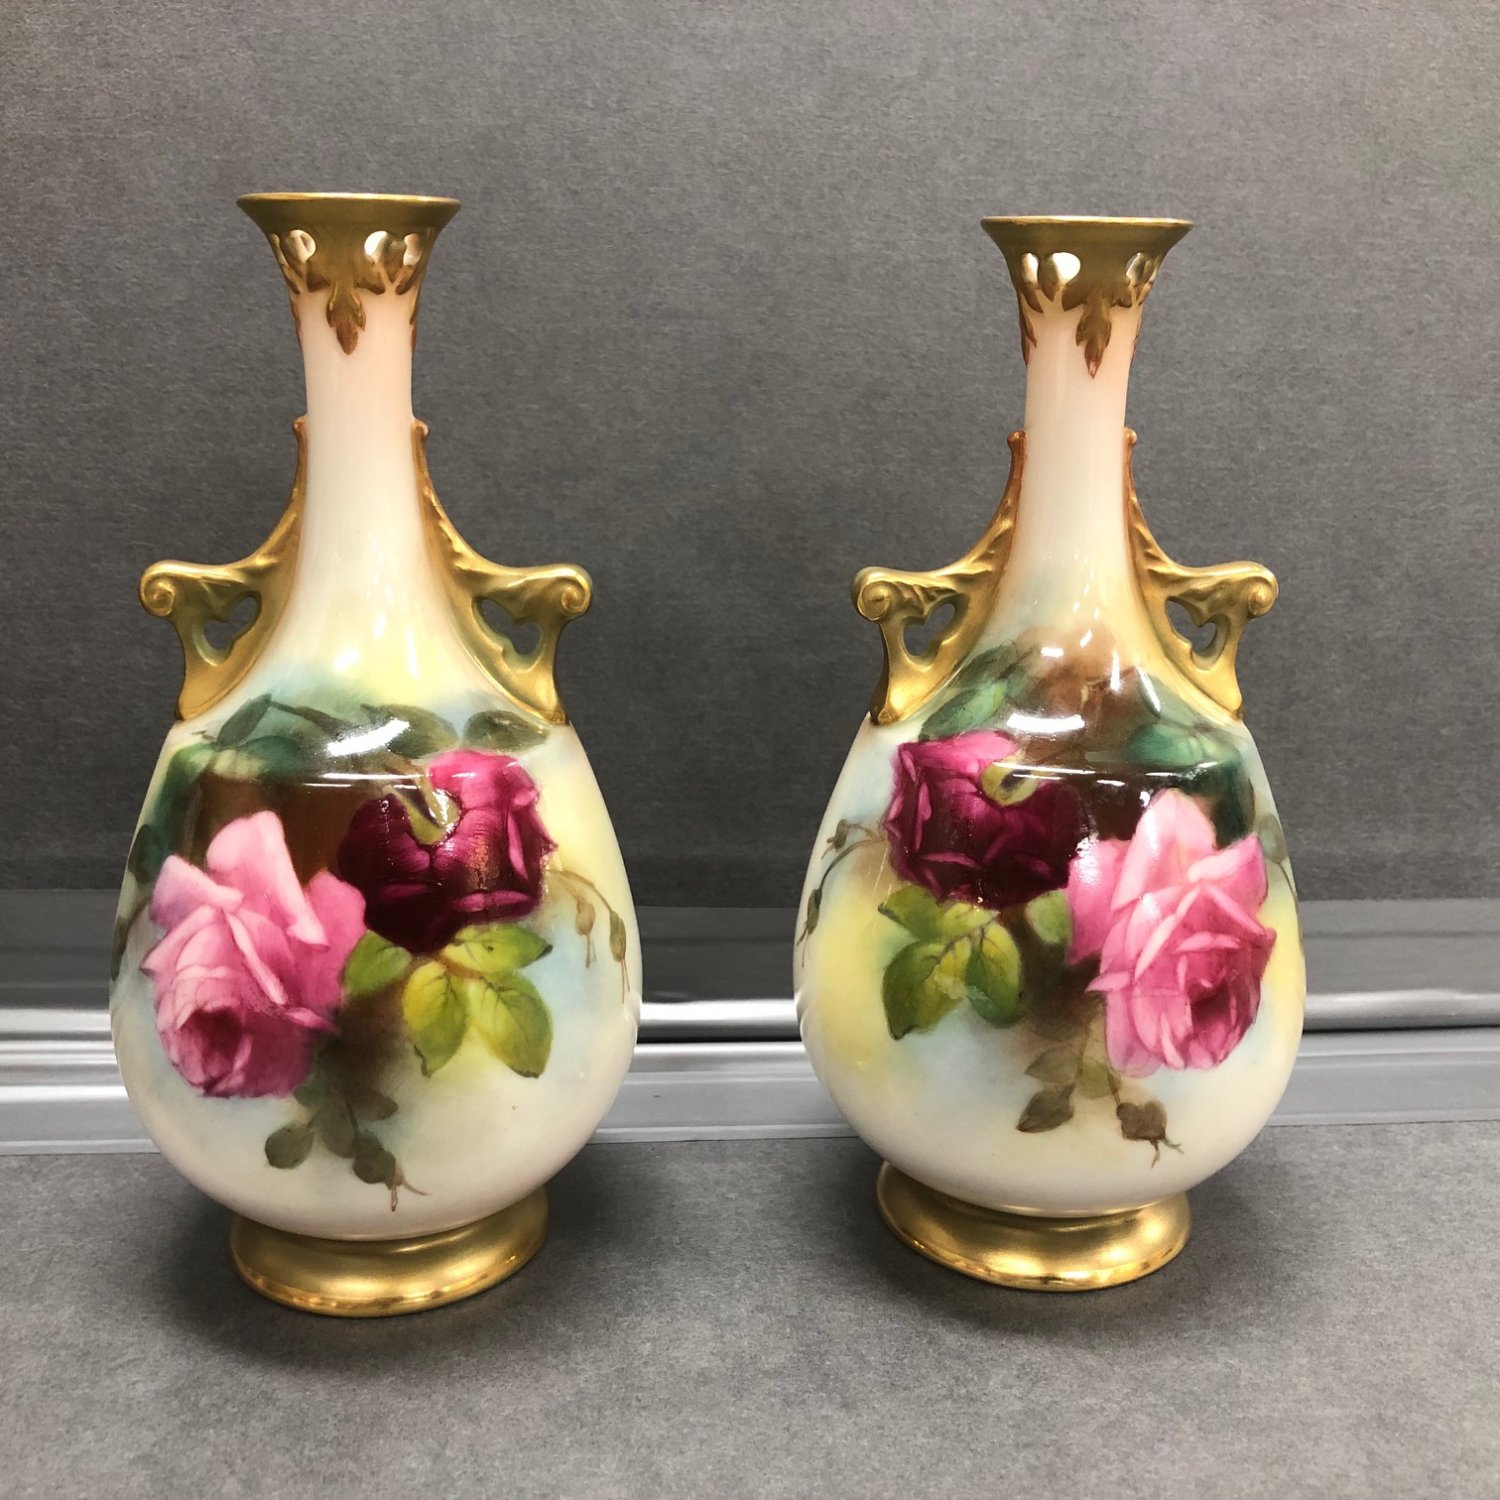 Pair Royal Worcester Vases